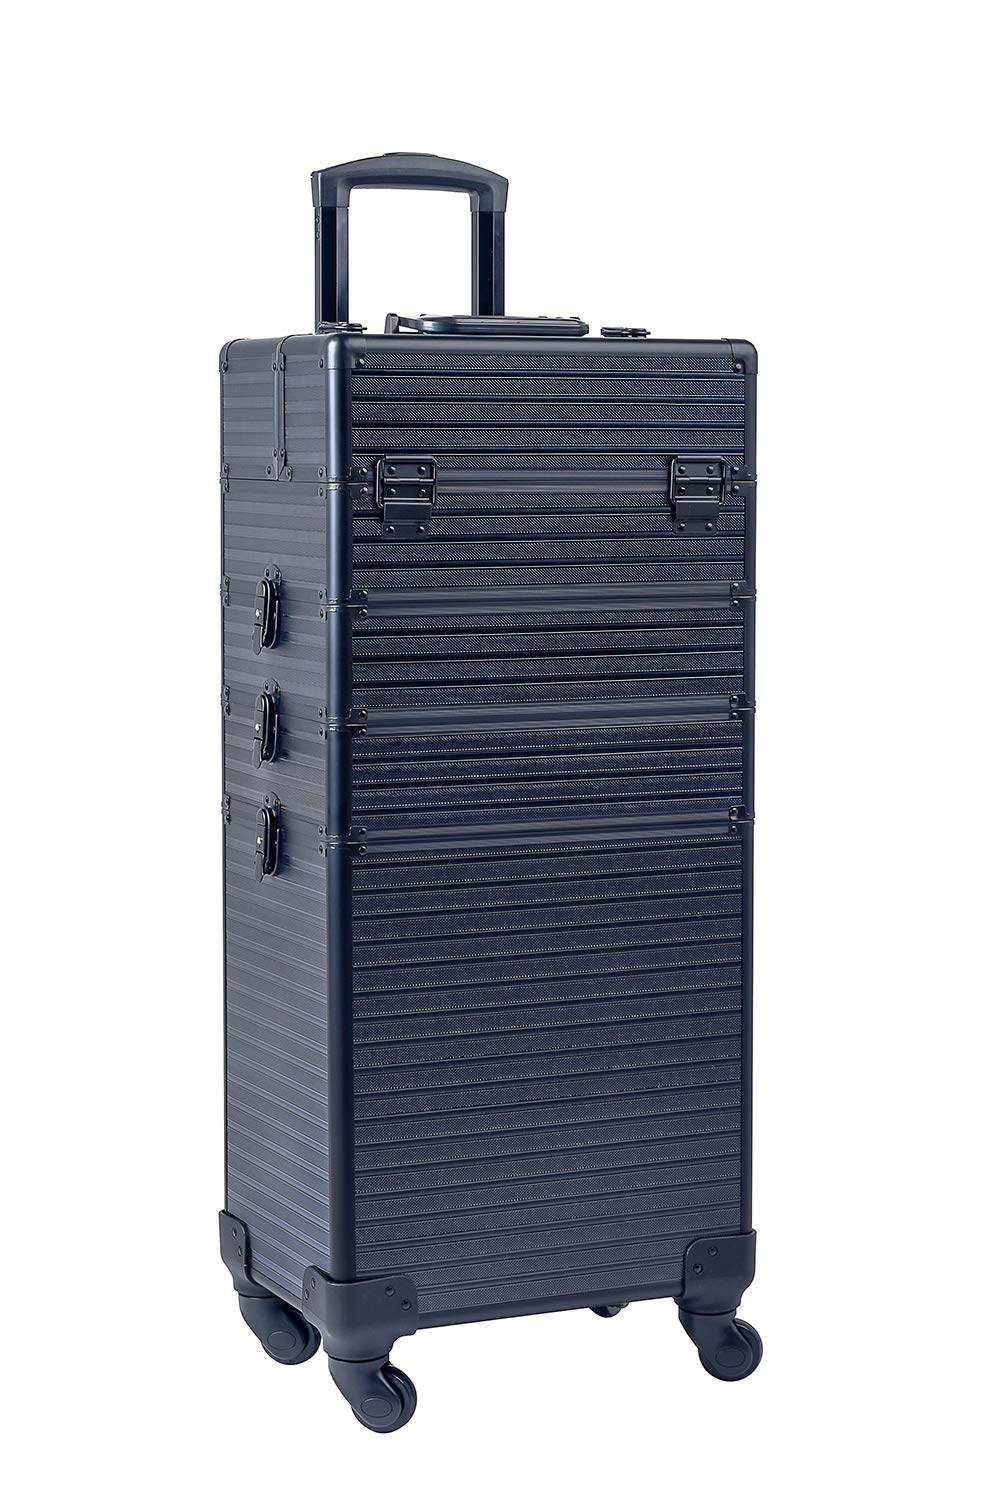 Aluminum Travel Case Large Capacity 4  in 1